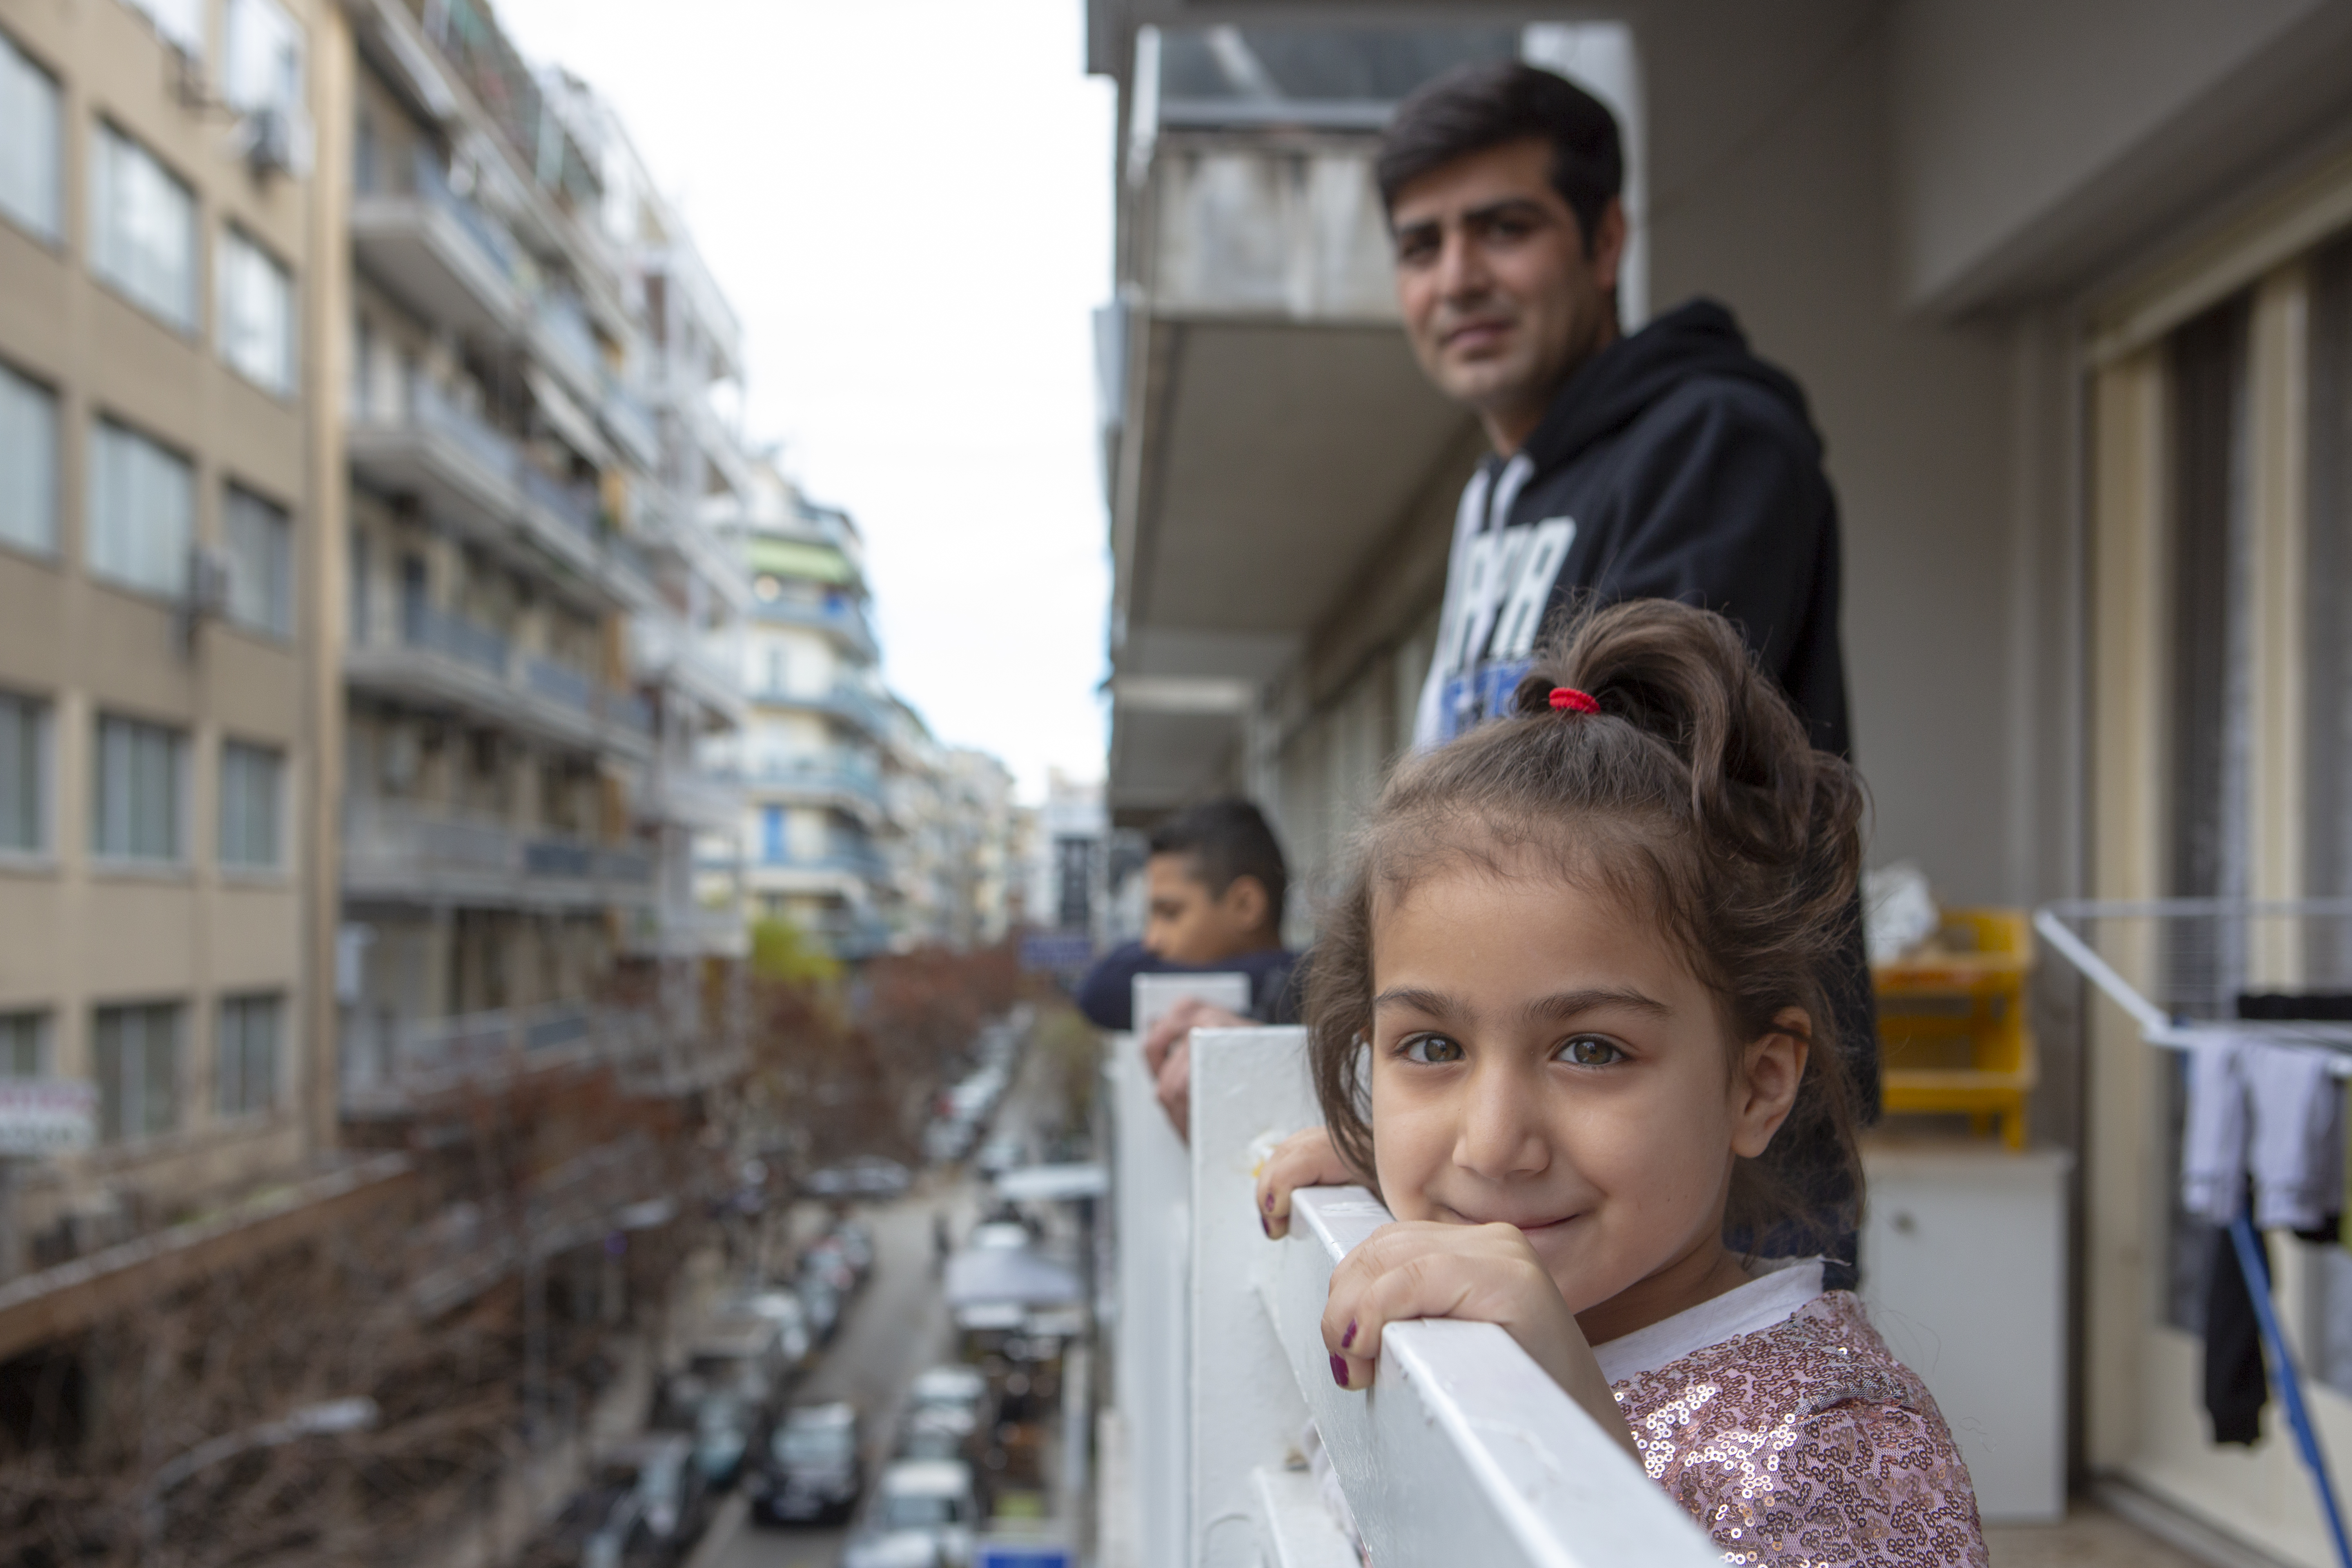 Ragazzi che si affacciano dal balcone di un palazzo - I rifugiati